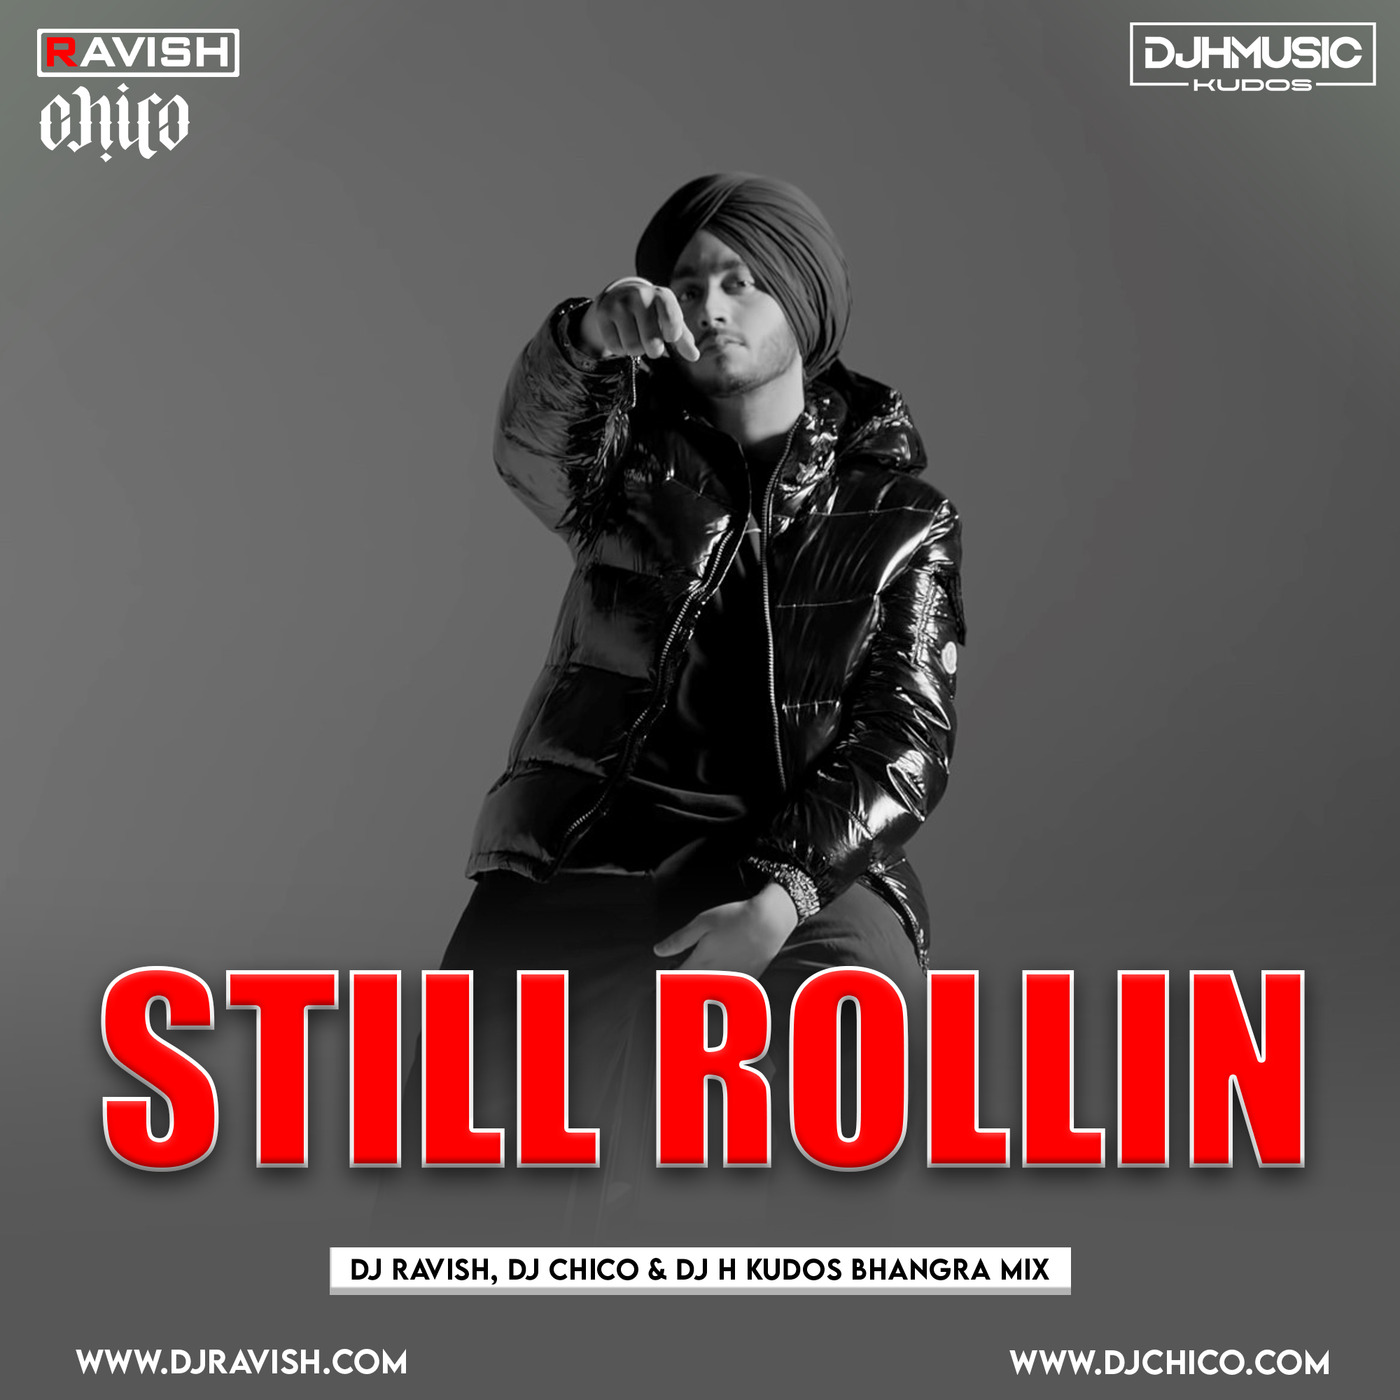 Shubh - Still Rollin (DJ Ravish, DJ Chico & DJ H Kudos Bhangra Mix)